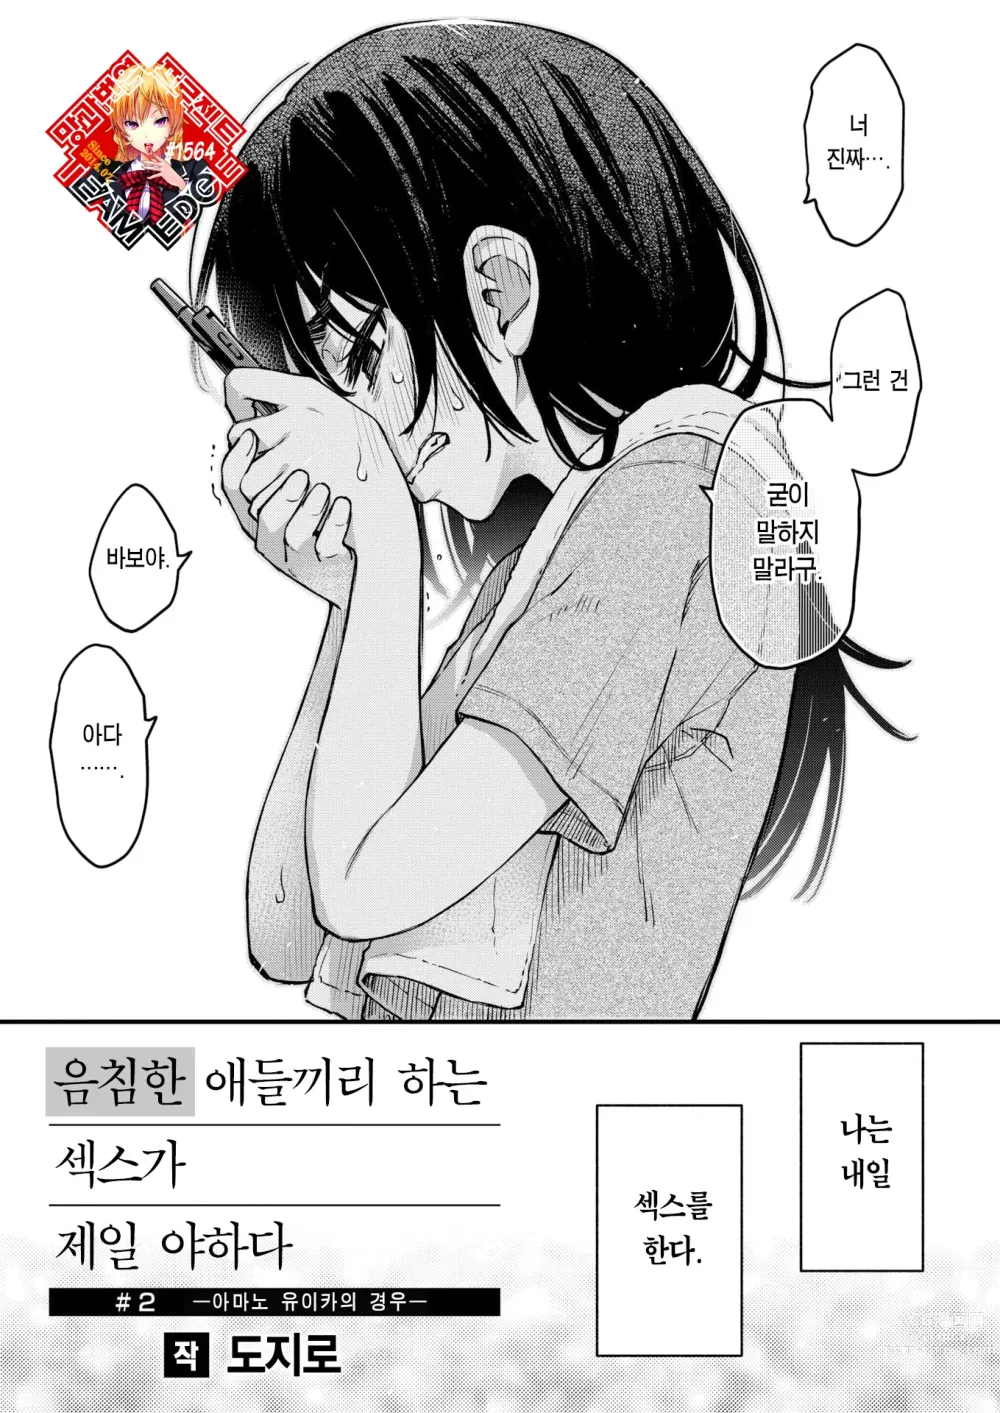 Page 1 of manga 음침한 애들끼리 하는 섹스가 제일 야하다 #2 ―아마노 유이카의 경우―